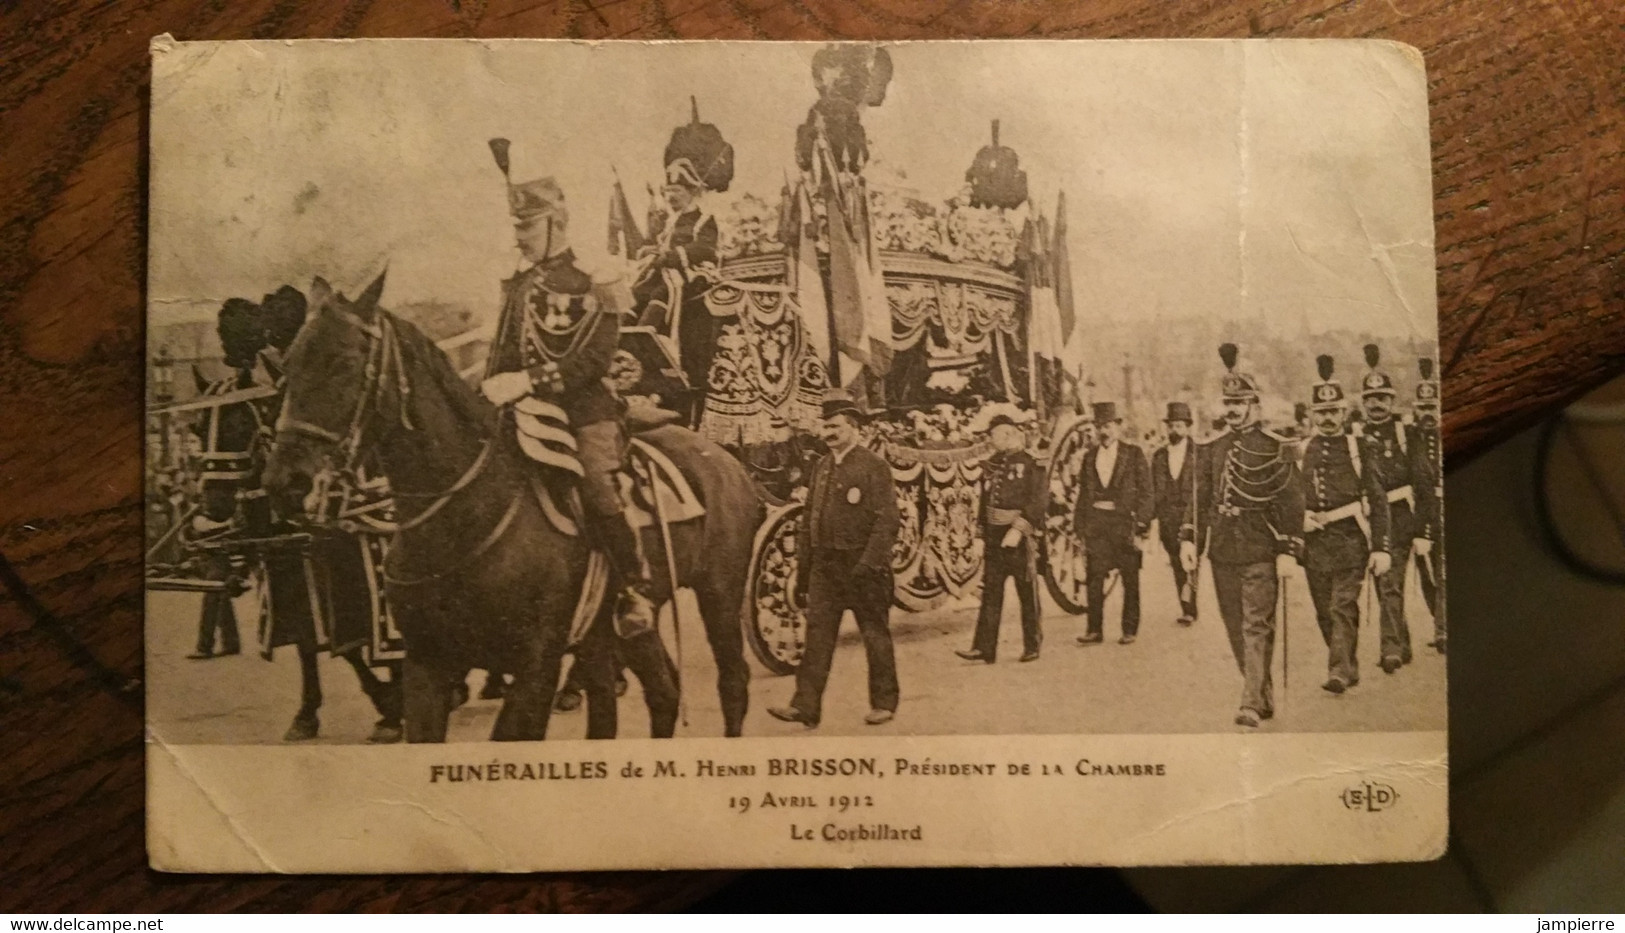 Paris - Funérailles De M. Henri Brisson, Président De La Chambre, 19 Avril 1912 - Le Corbillard - Konvolute, Lots, Sammlungen